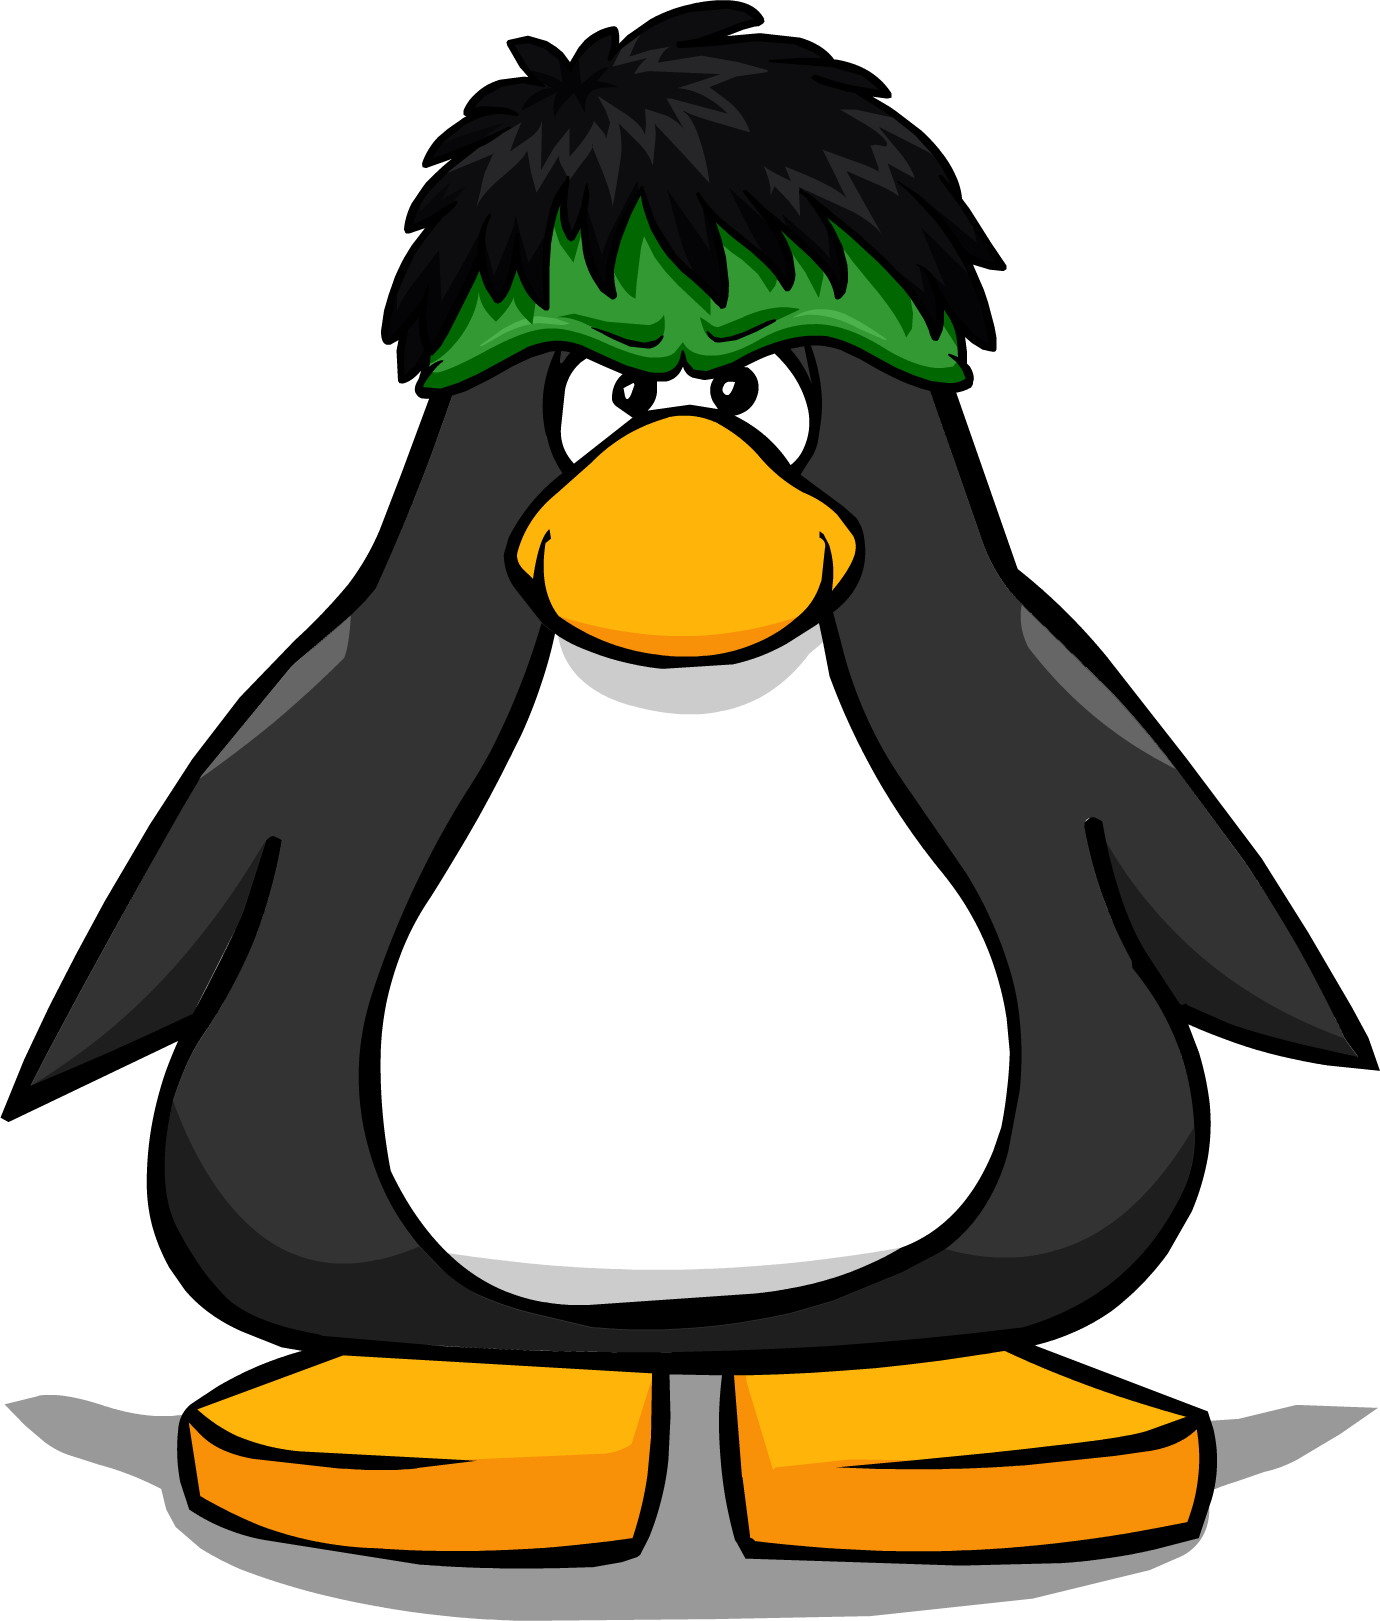 Thehulksmashpc - Penguin With Hard Hat (1380x1621), Png Download